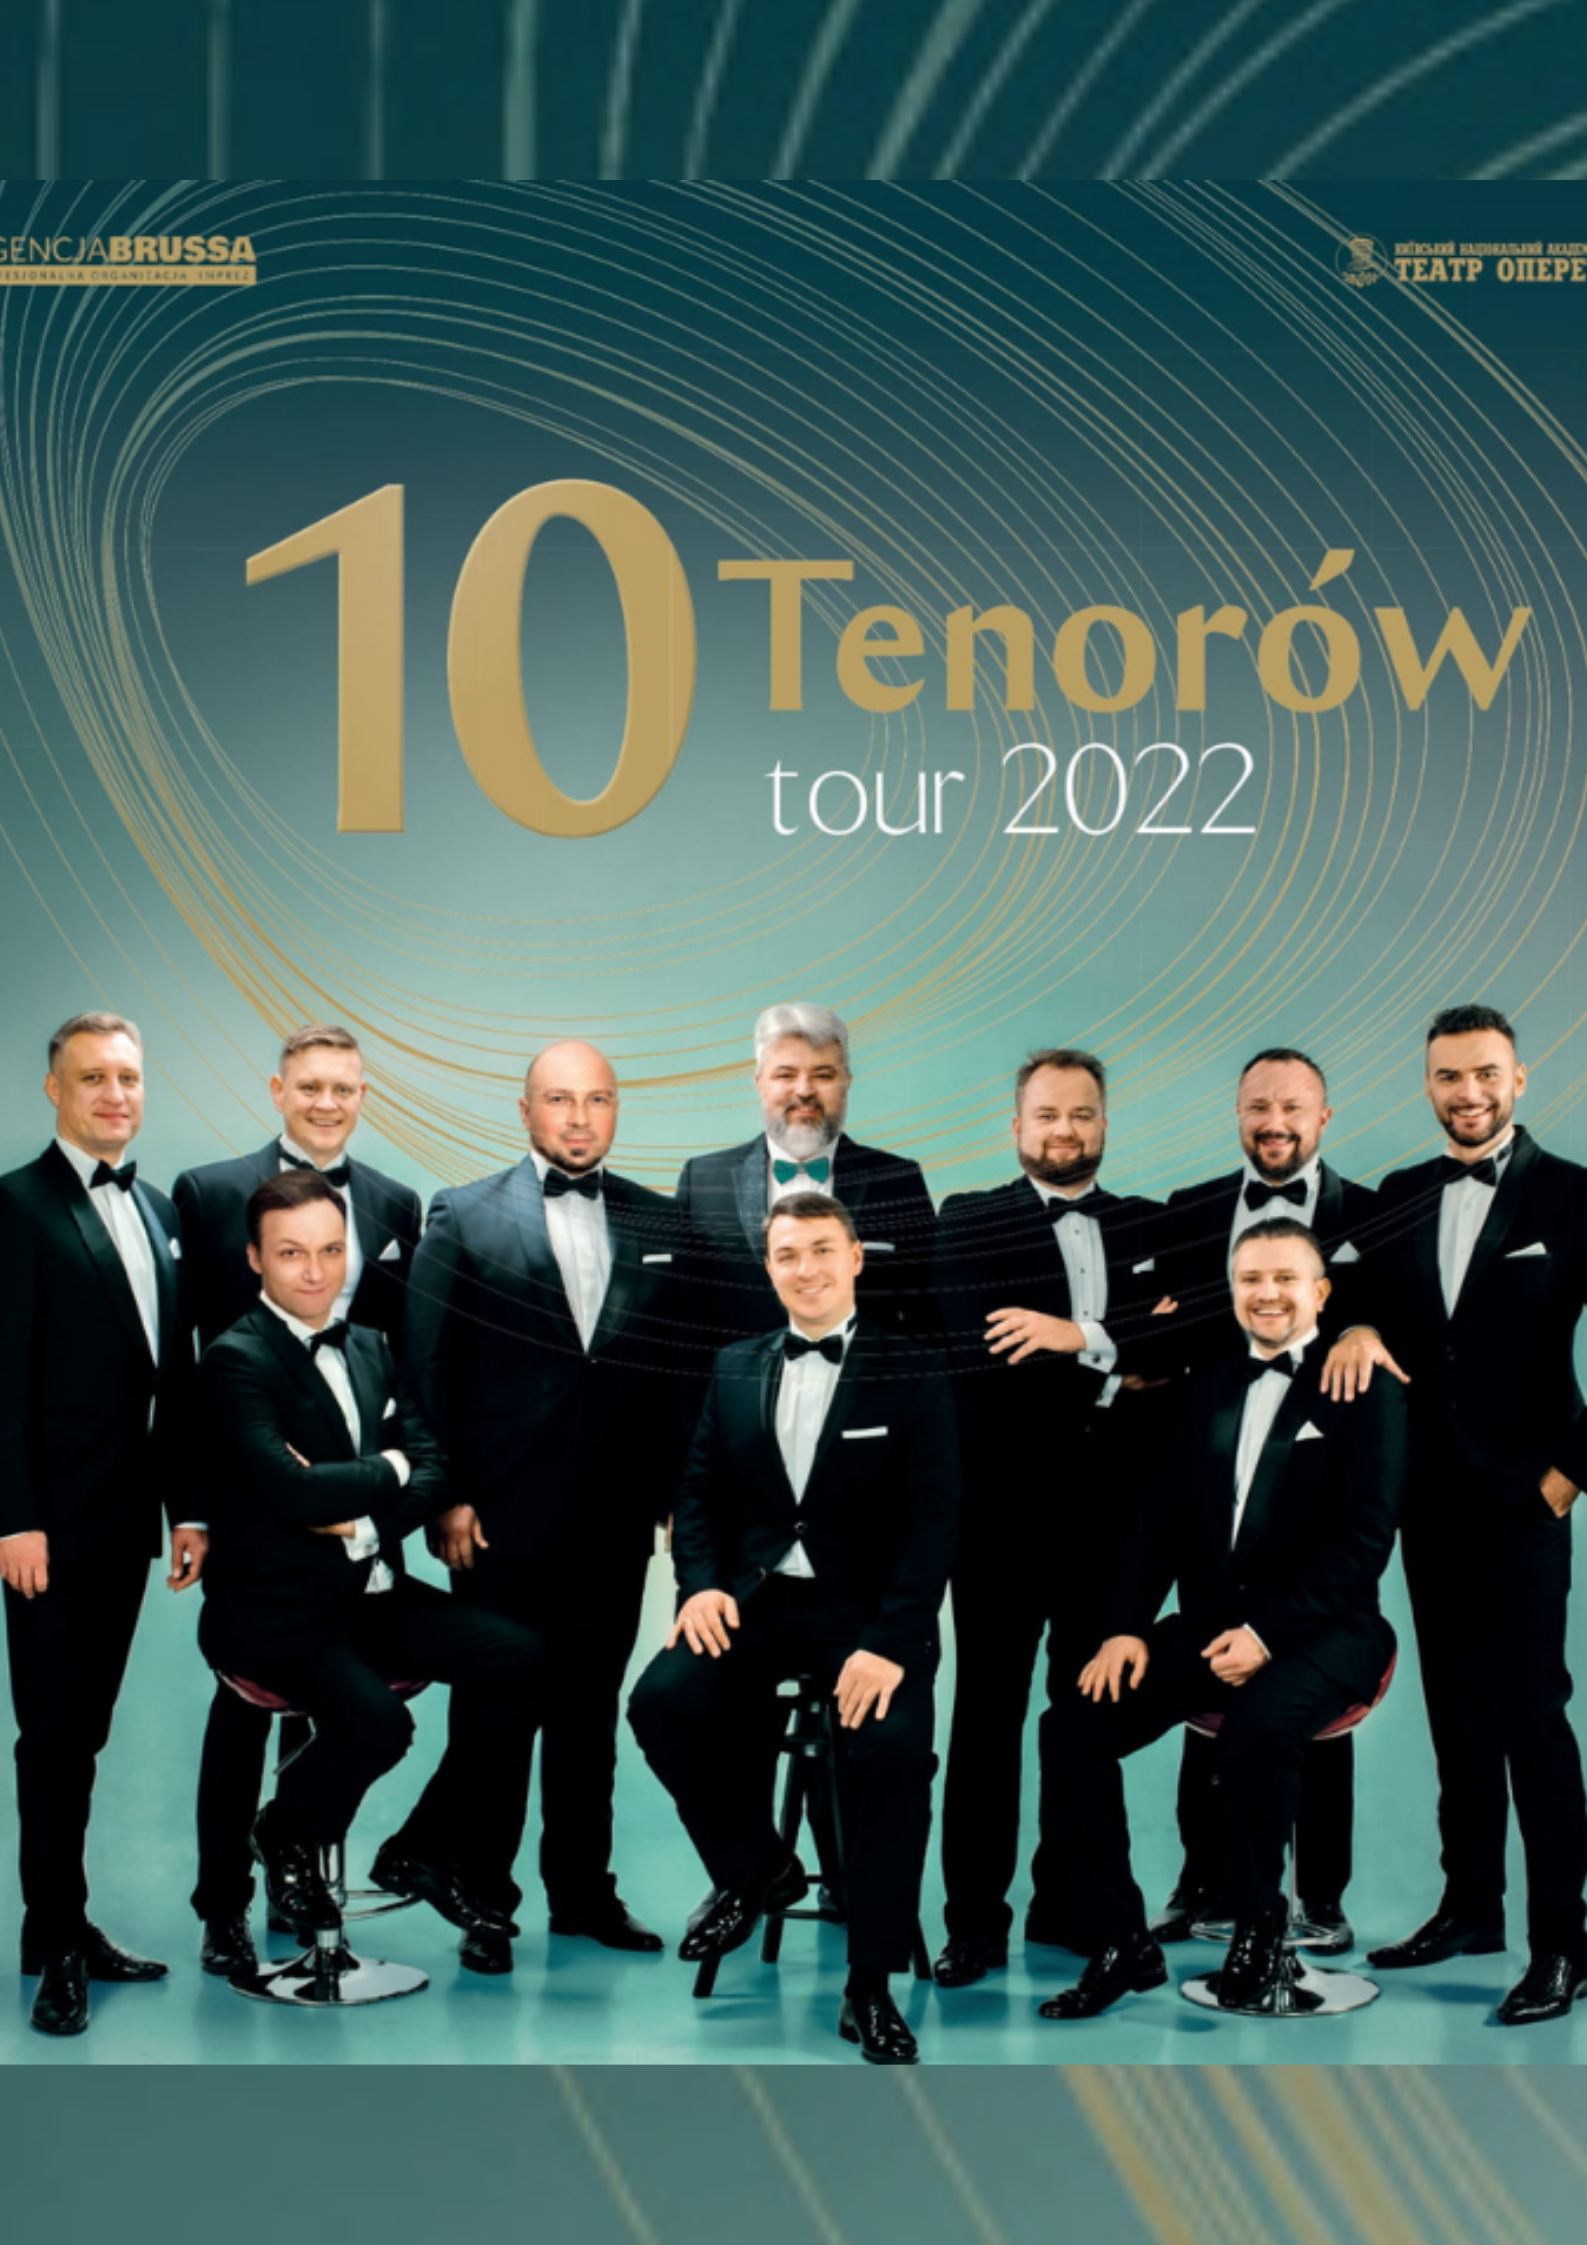  10 tenorów na zdjęciu plakat koncertu